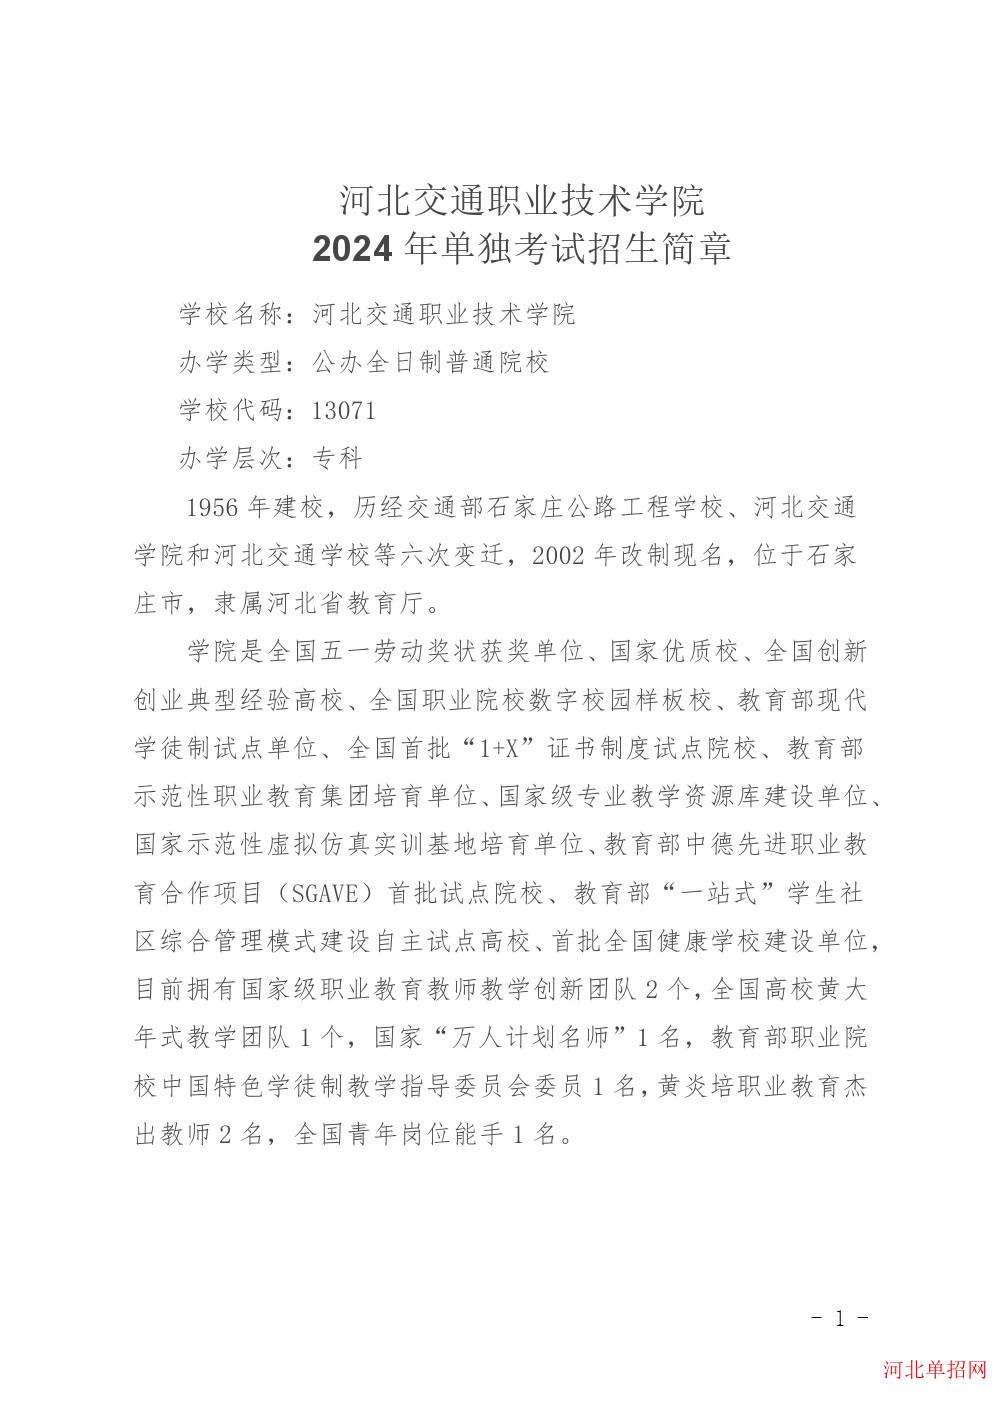 河北交通职业技术学院2024年单招招生简章 图1